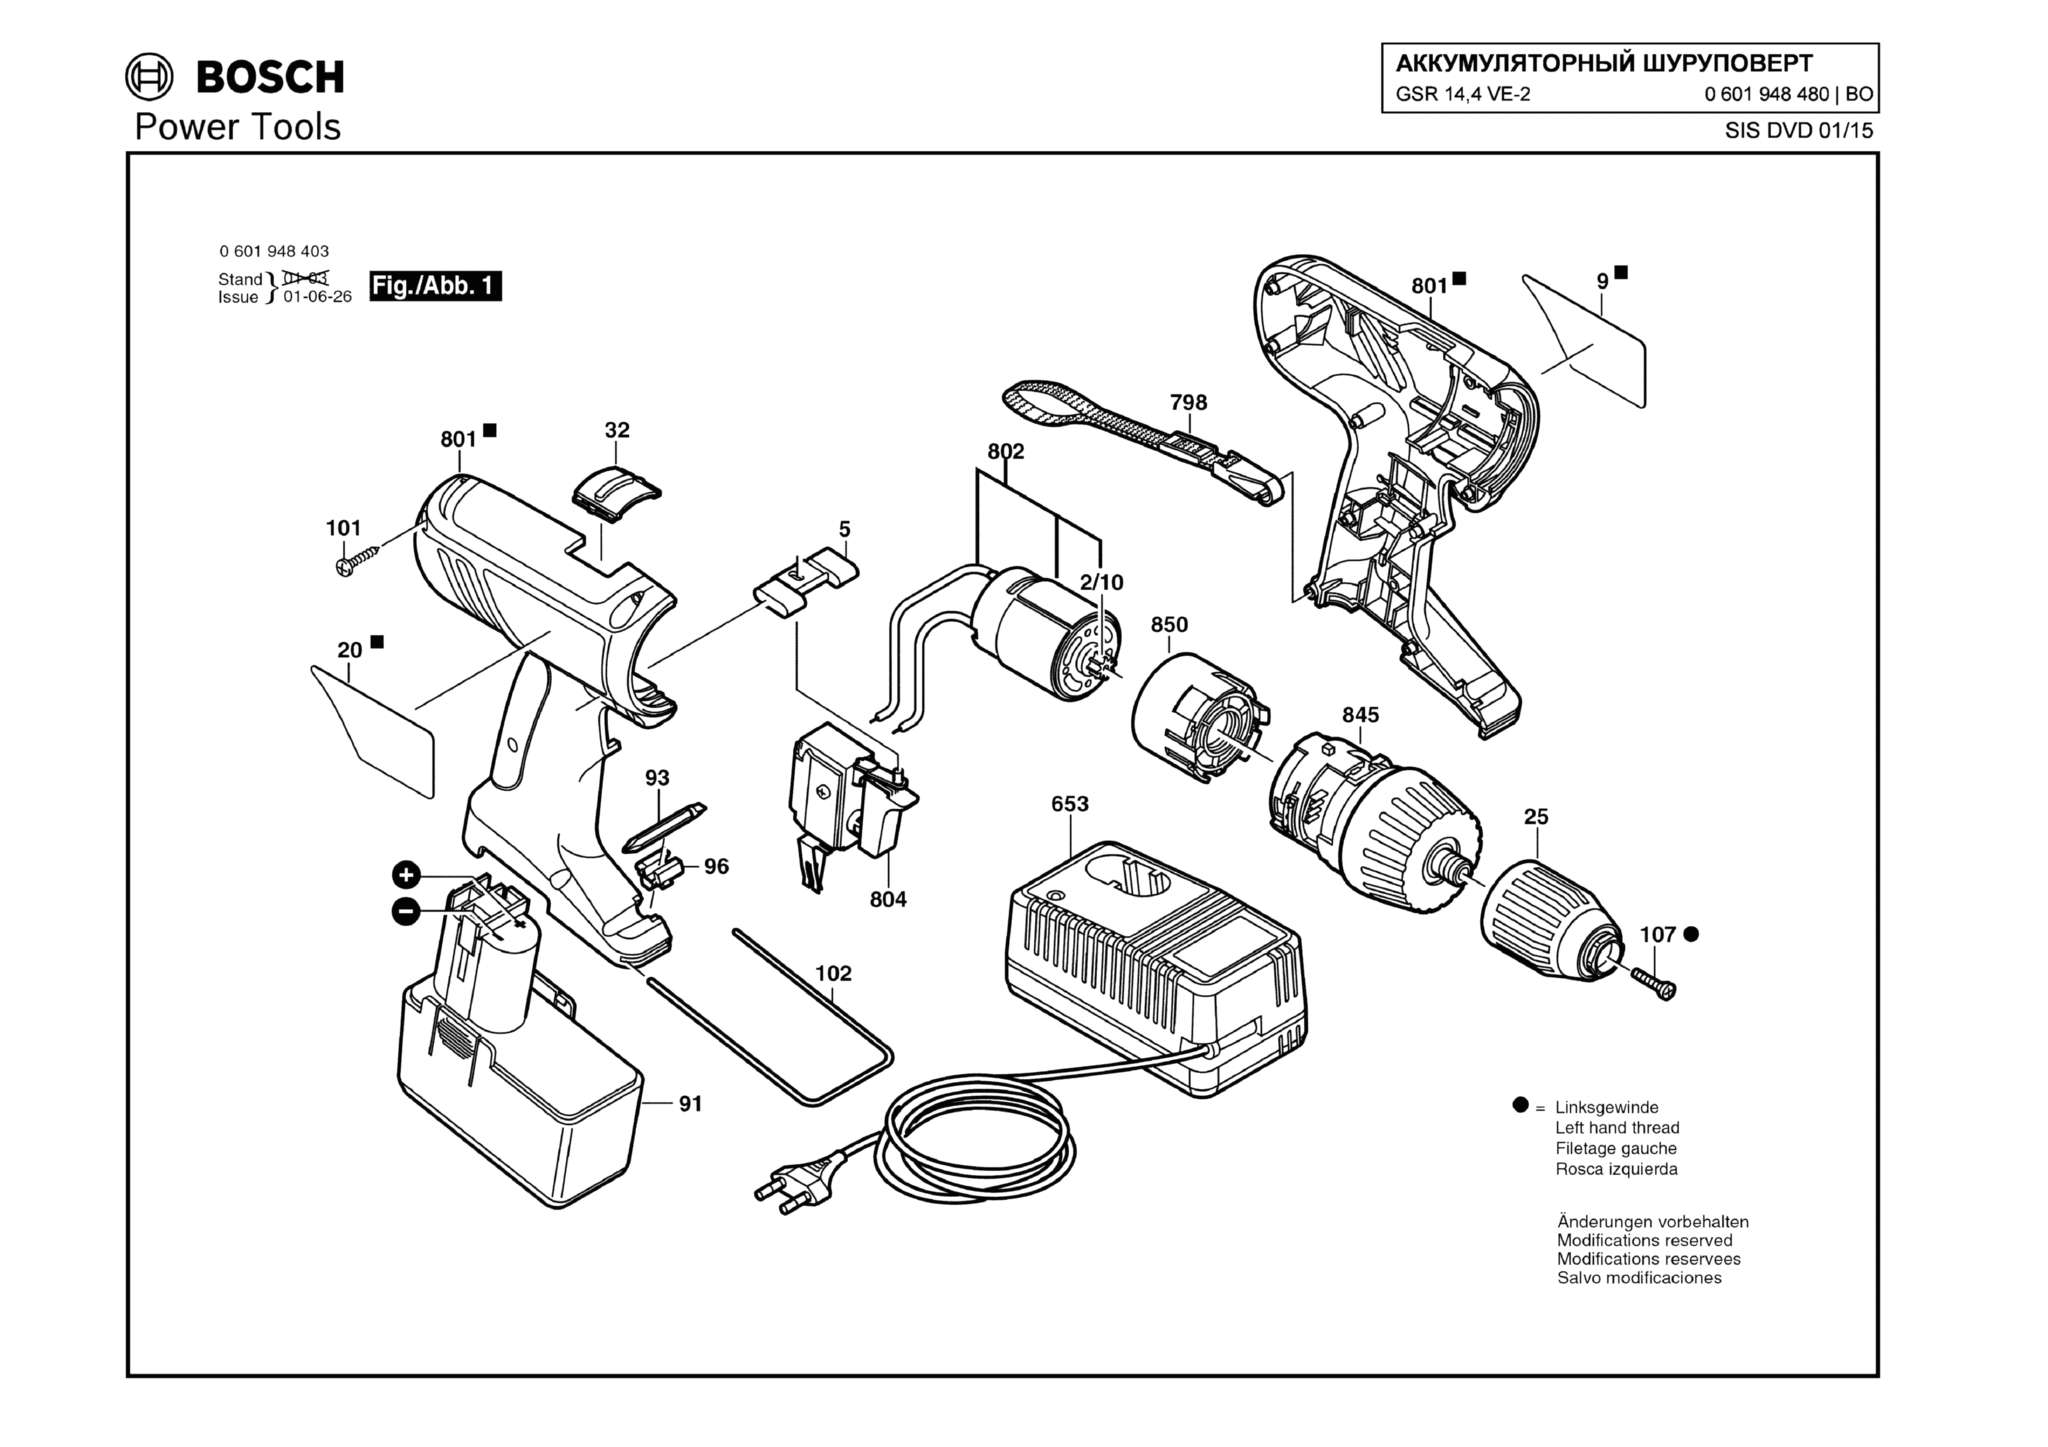 Запчасти, схема и деталировка Bosch GSR 14,4 VE-2 (ТИП 0601948480)